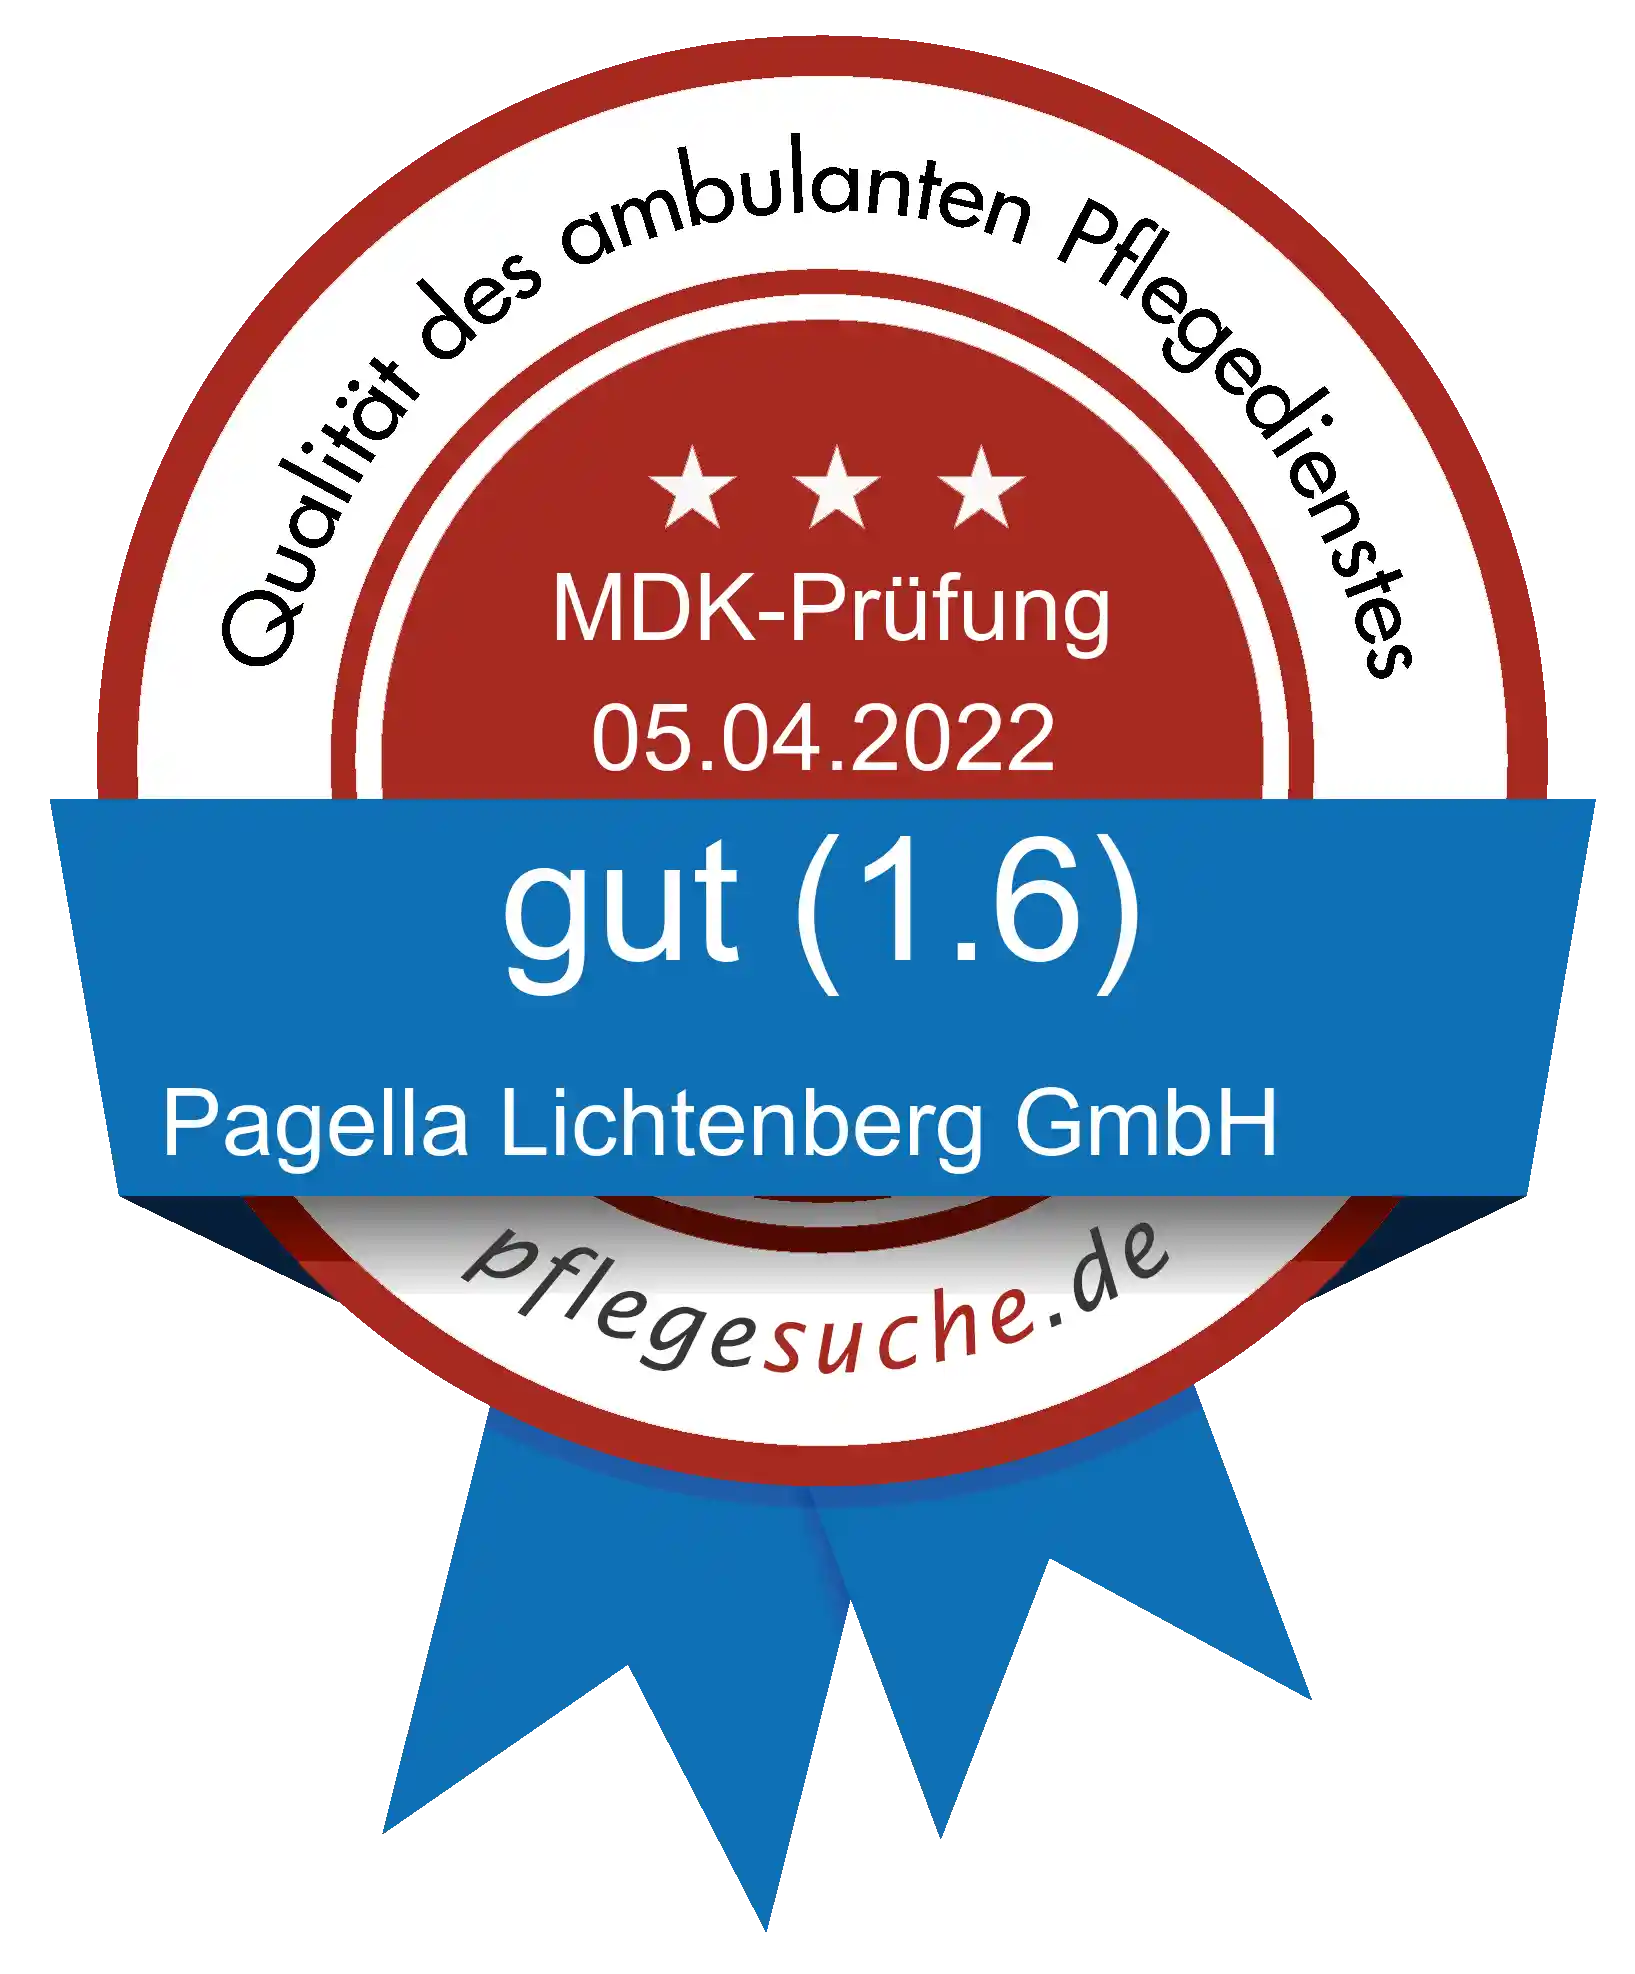 Siegel Benotung: Pagella Lichtenberg GmbH